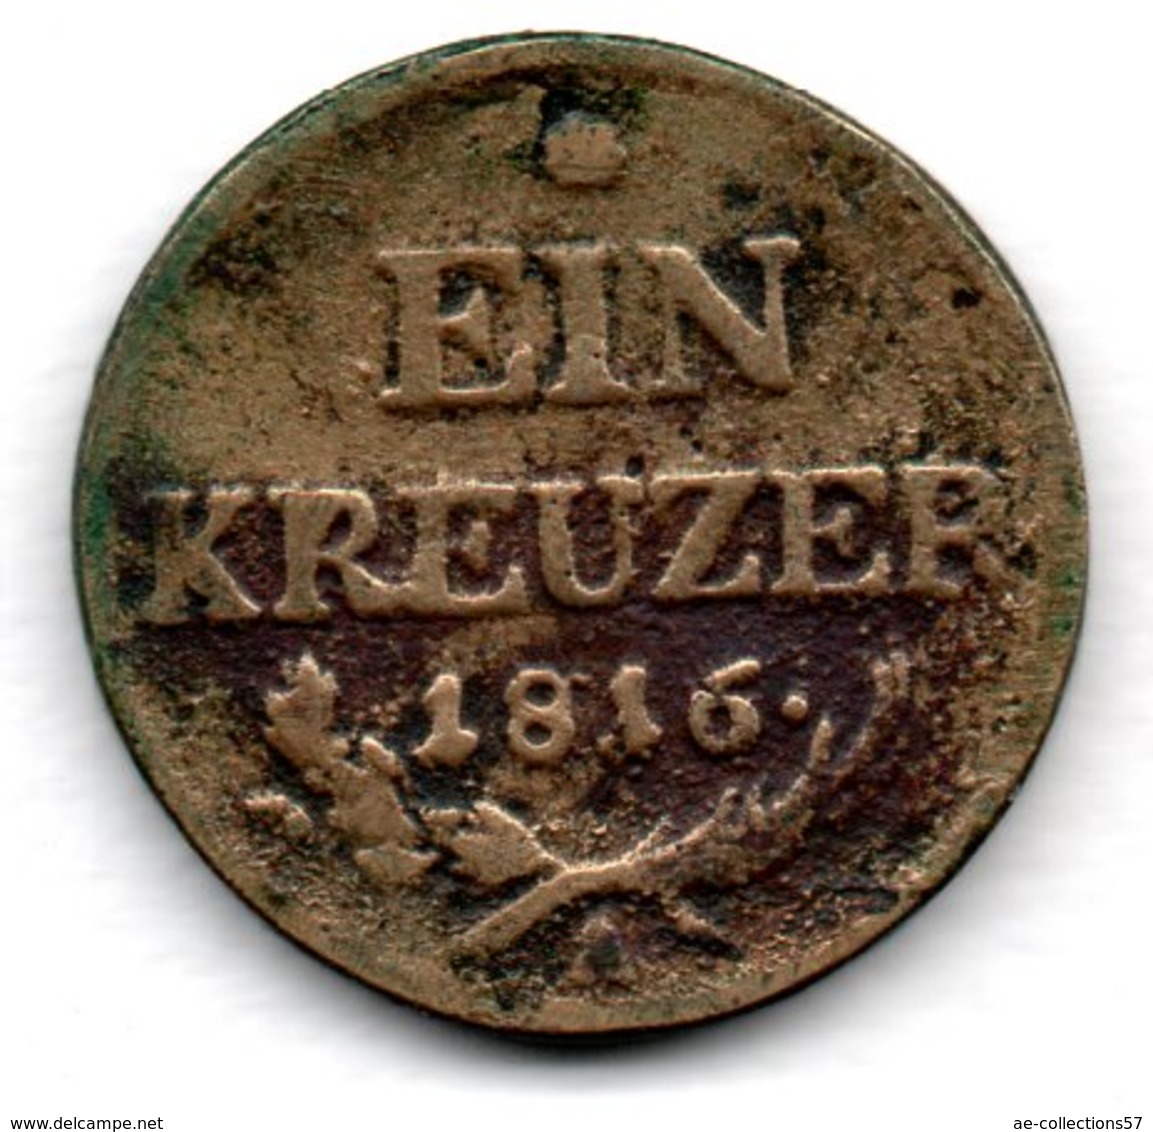 Autriche -  1 Kreuzer 1816 A  - Km # 2113  -  état  B+ - Autriche